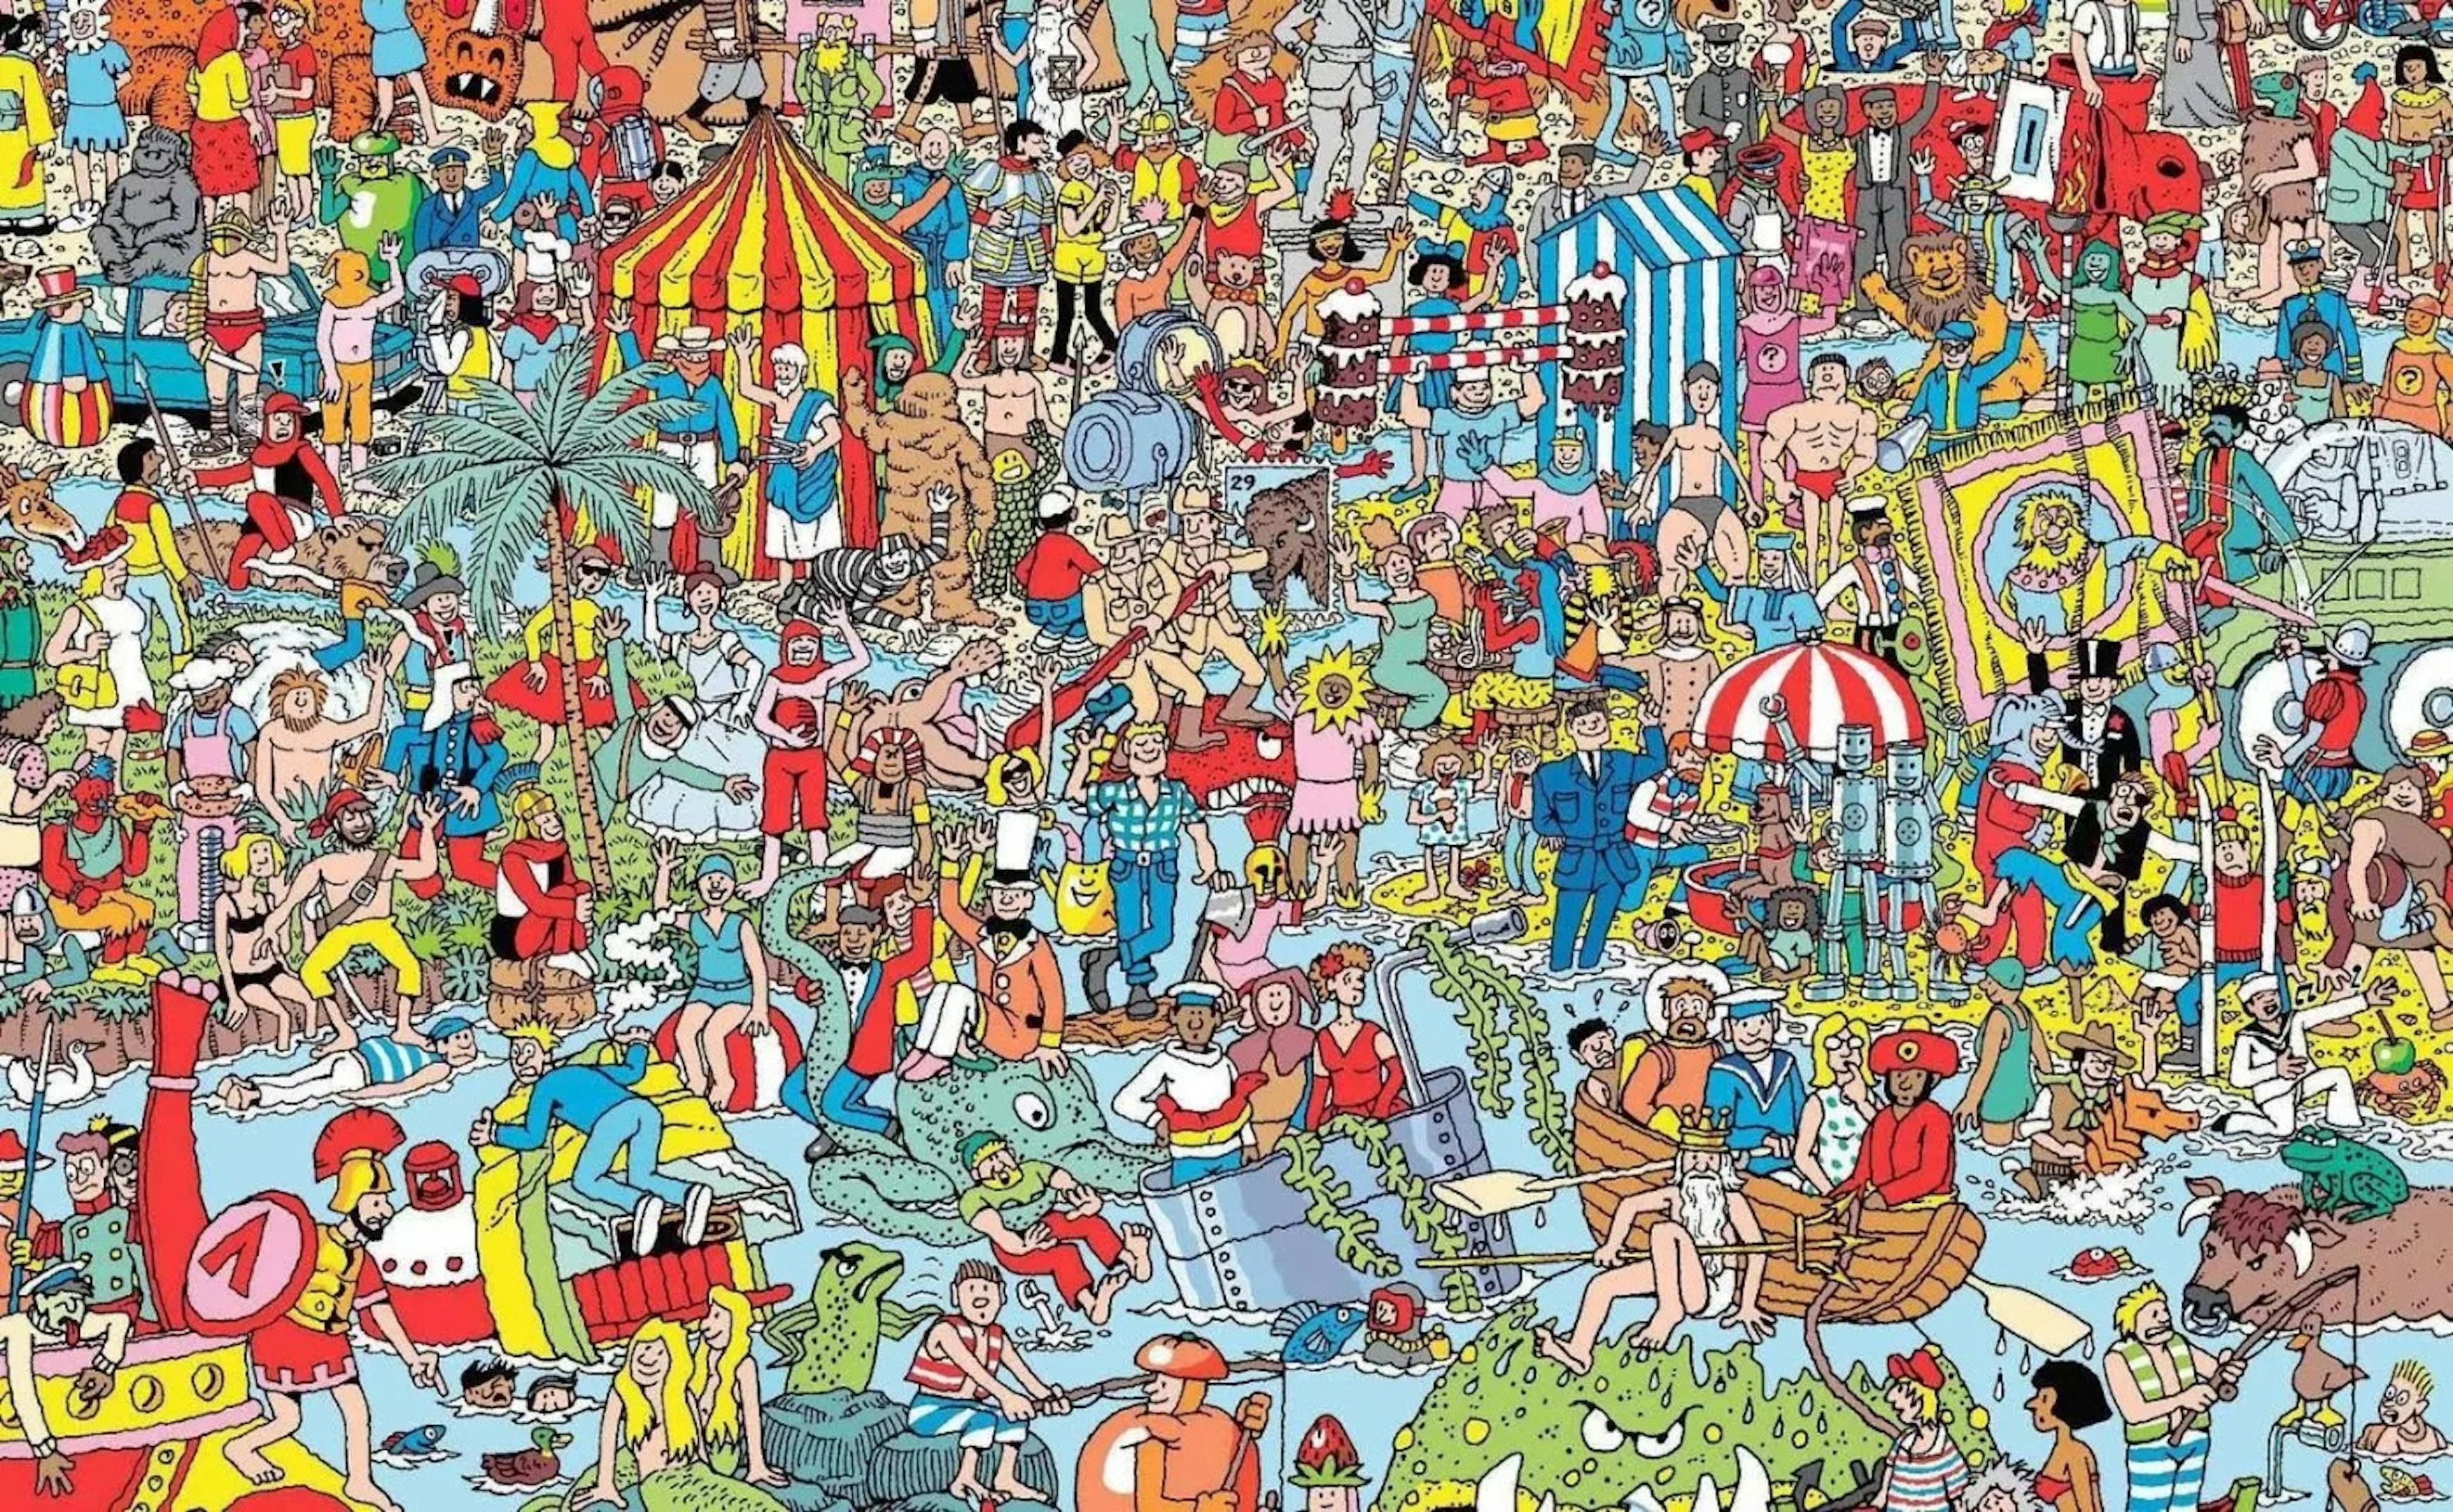 Resimde Wally'yi buldun mu?